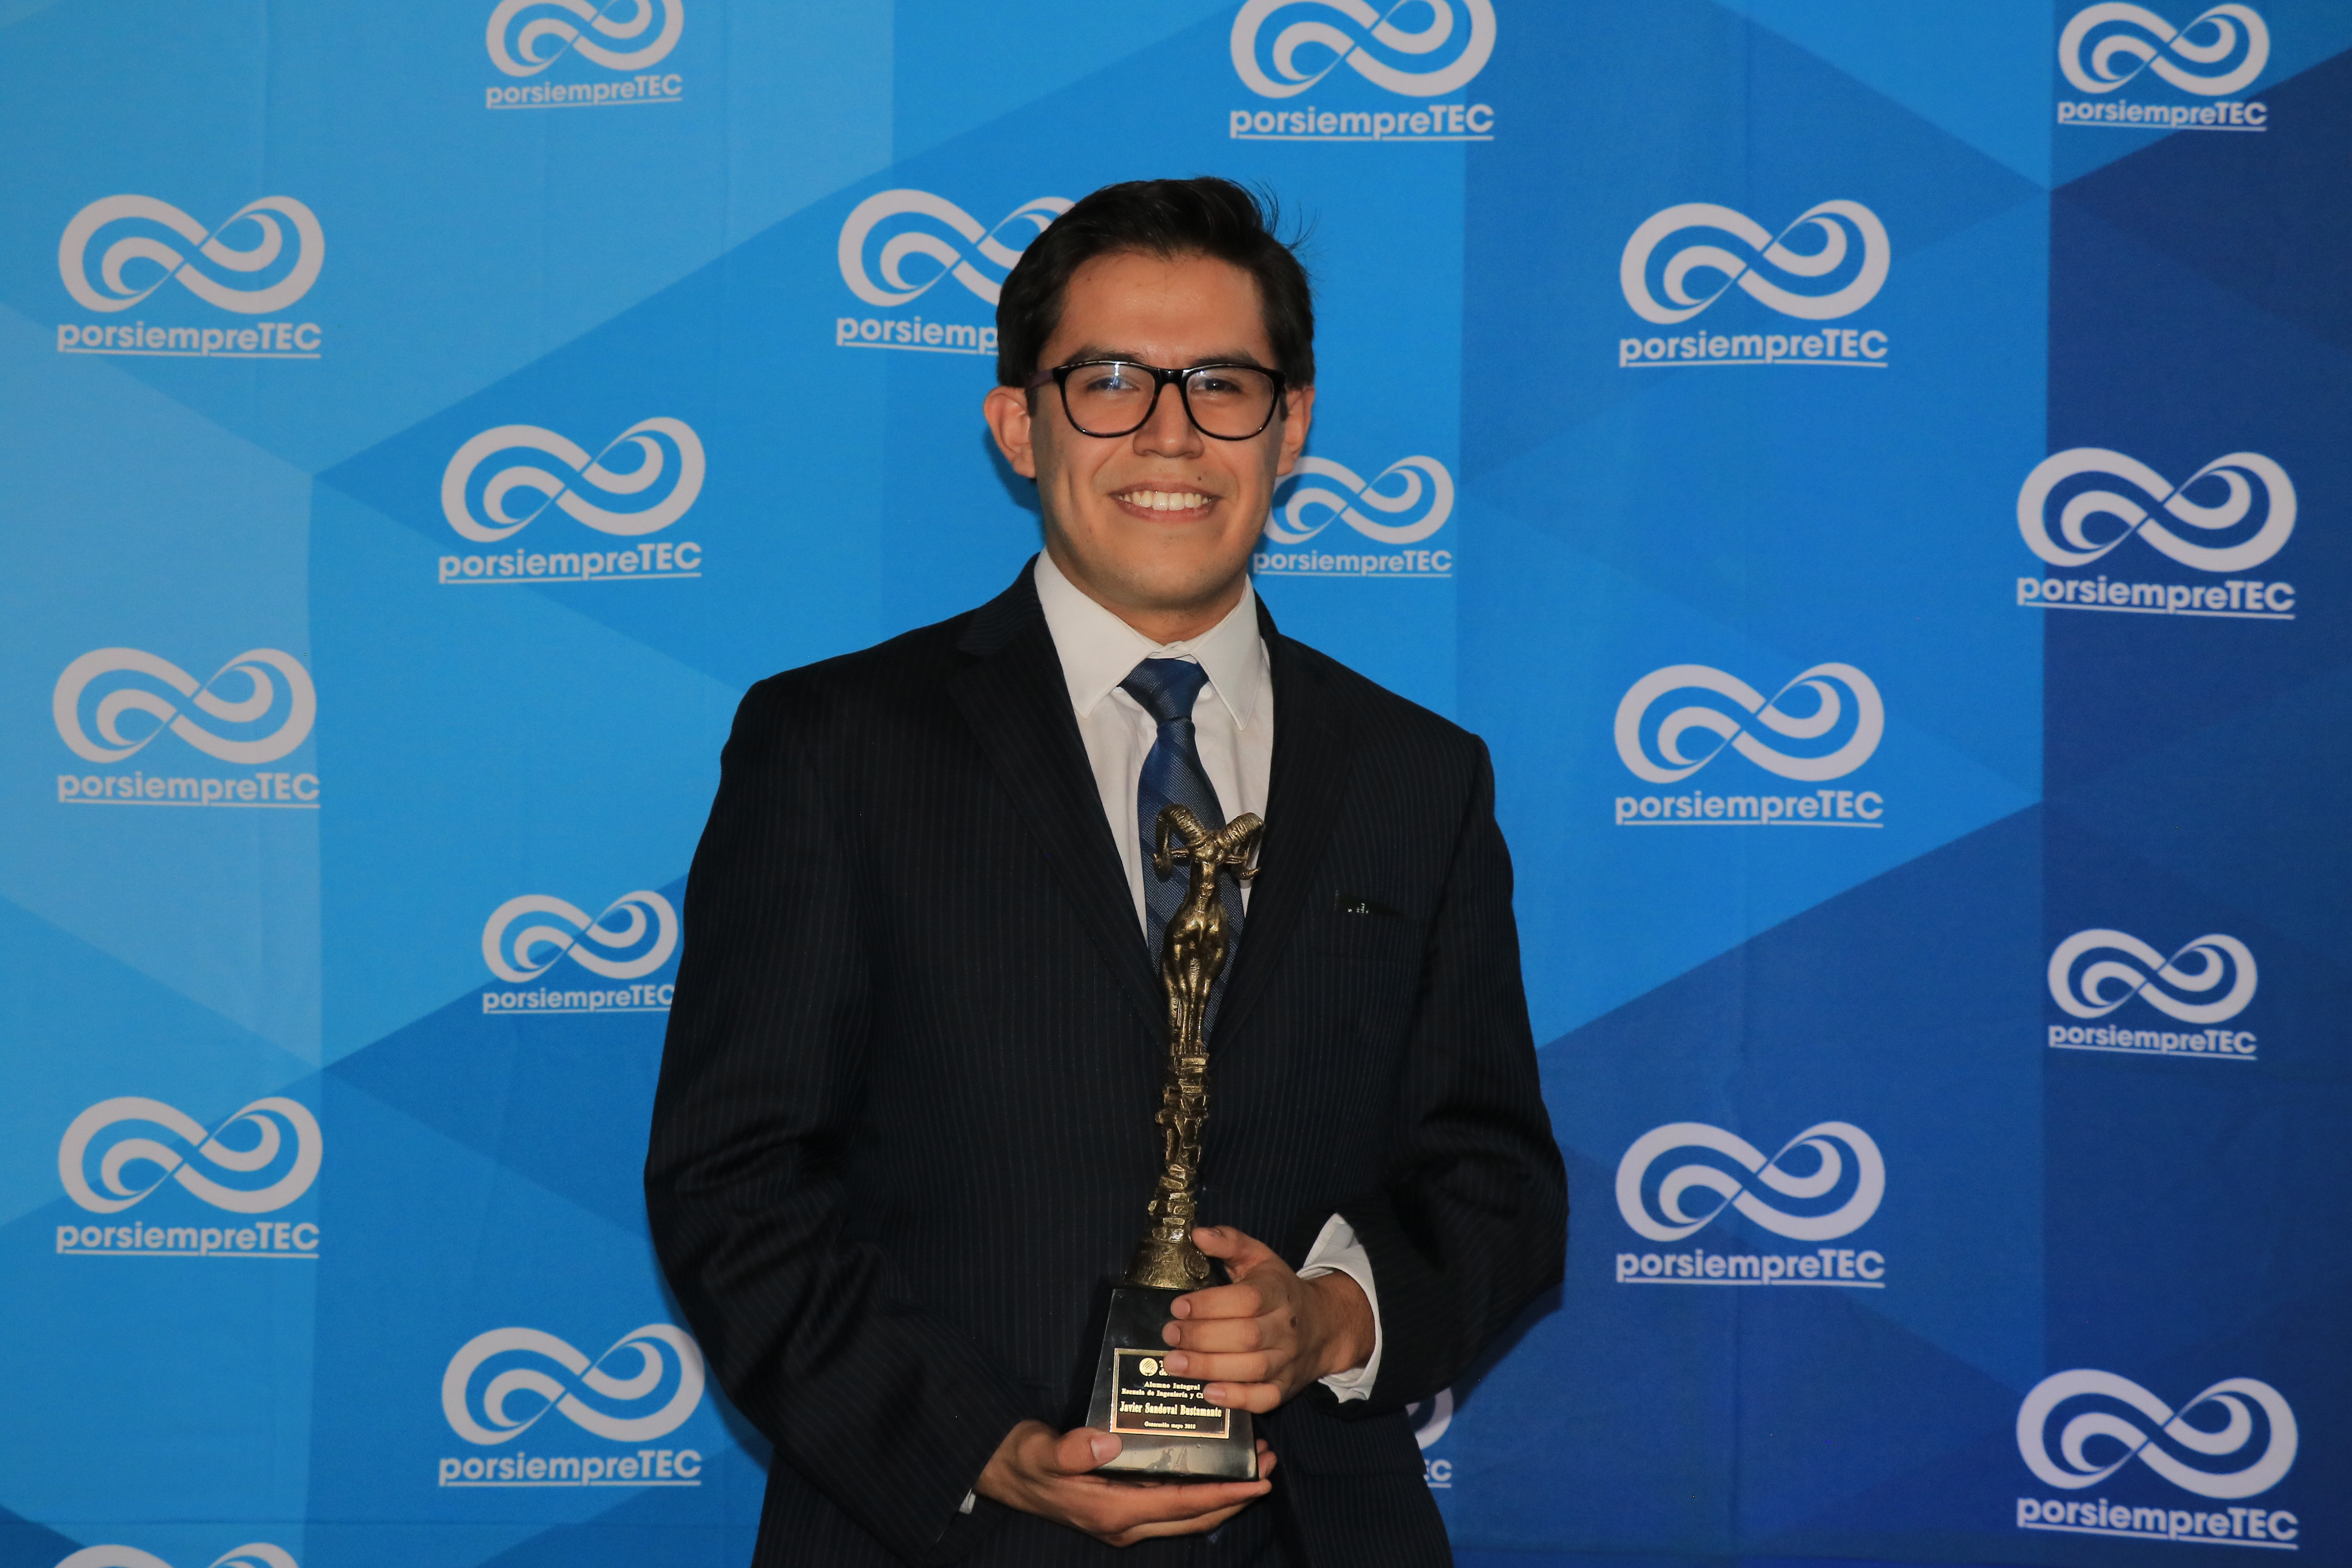 Javier Sandoval, Premio Alumno Integral.